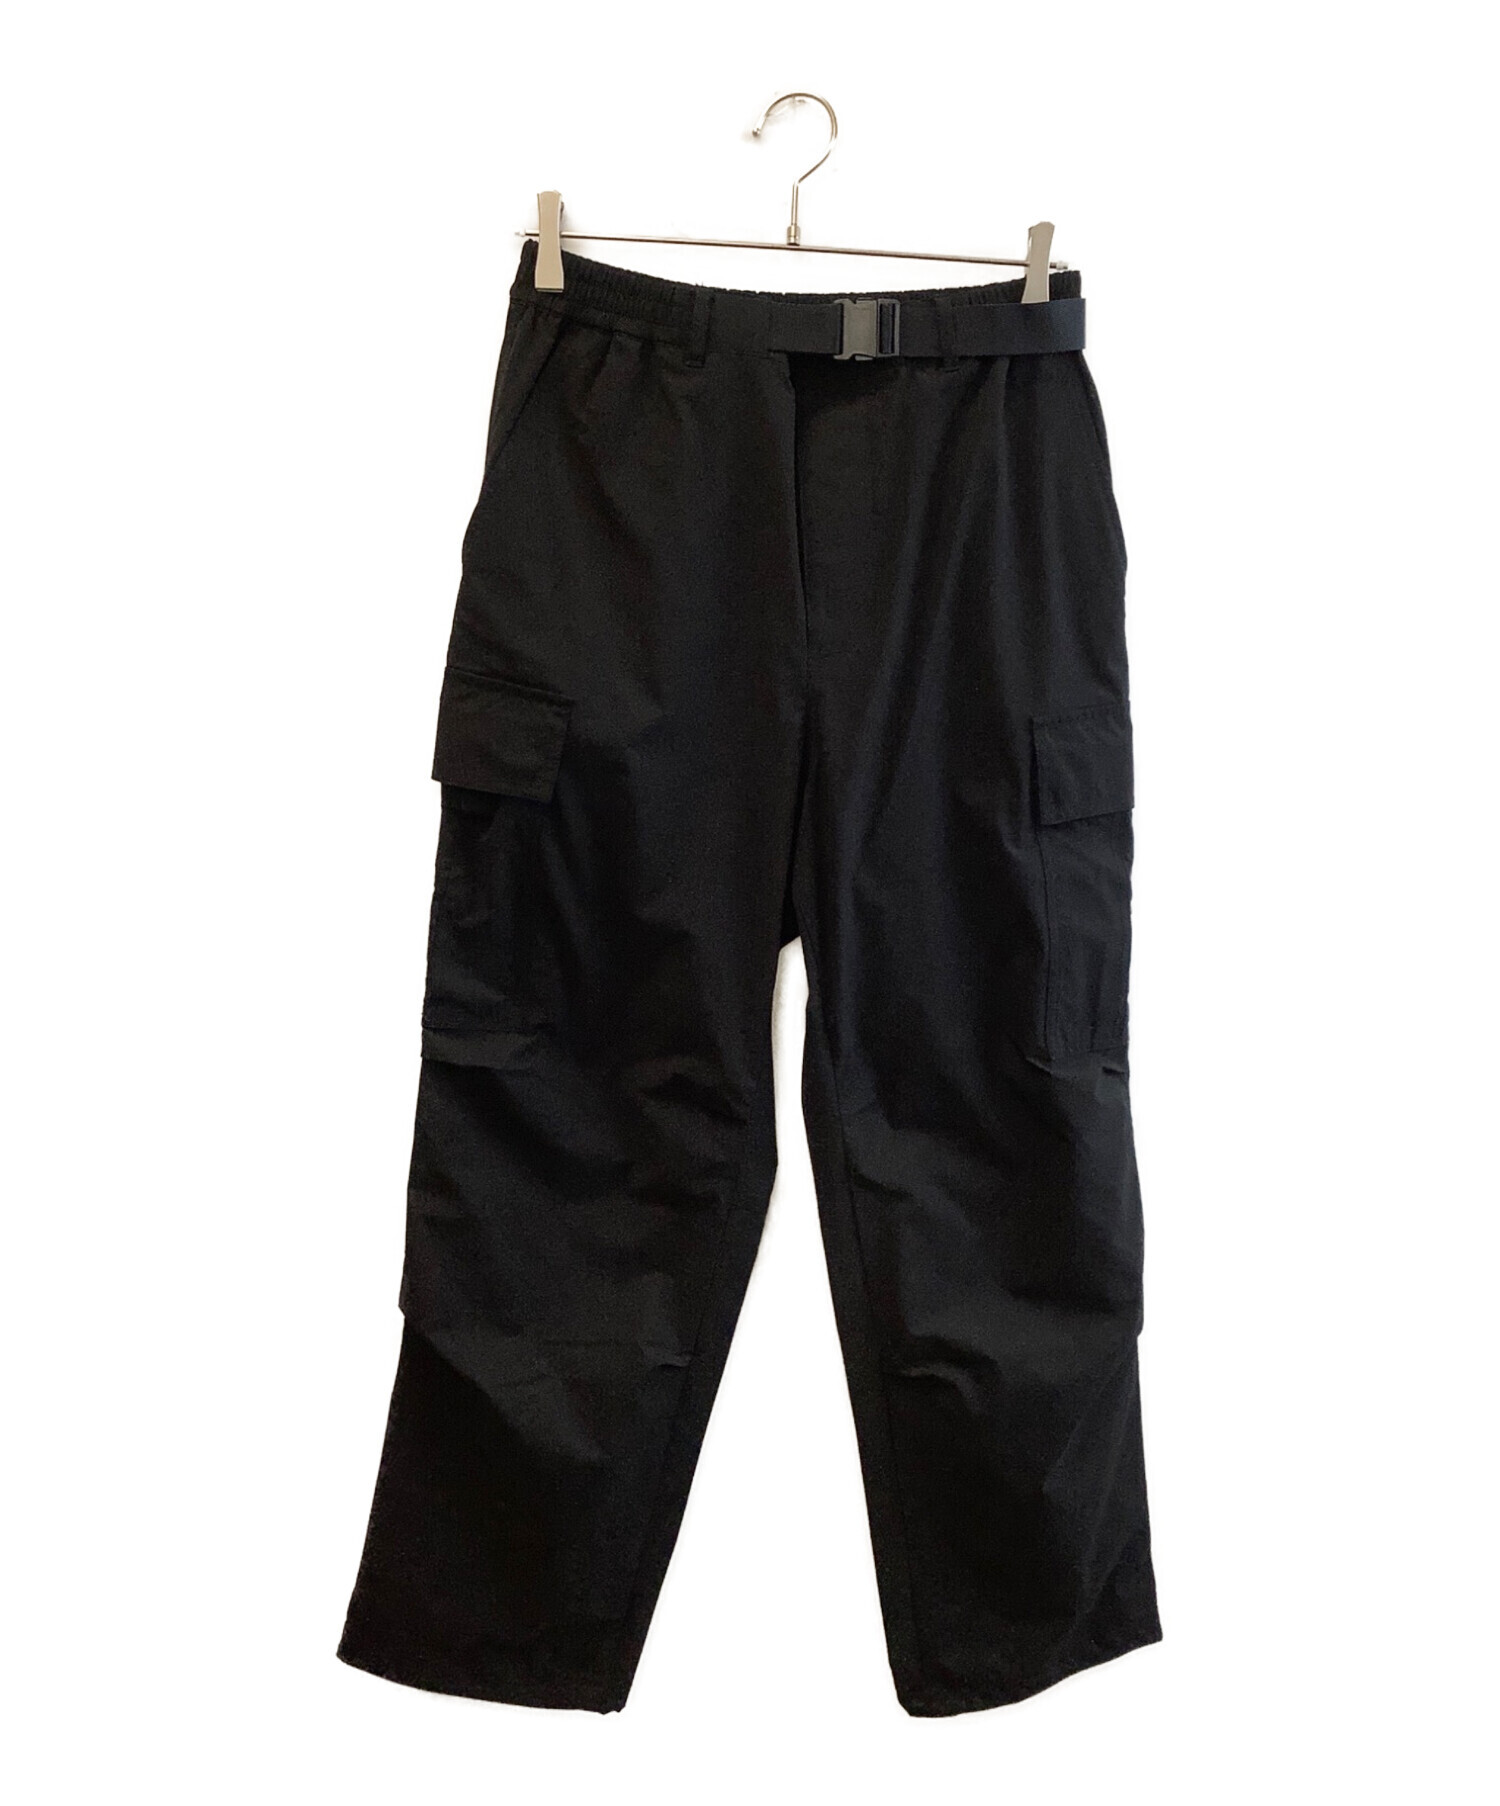 ブラックレーベルクレストブリッジ パンツ Mサイズ - パンツ